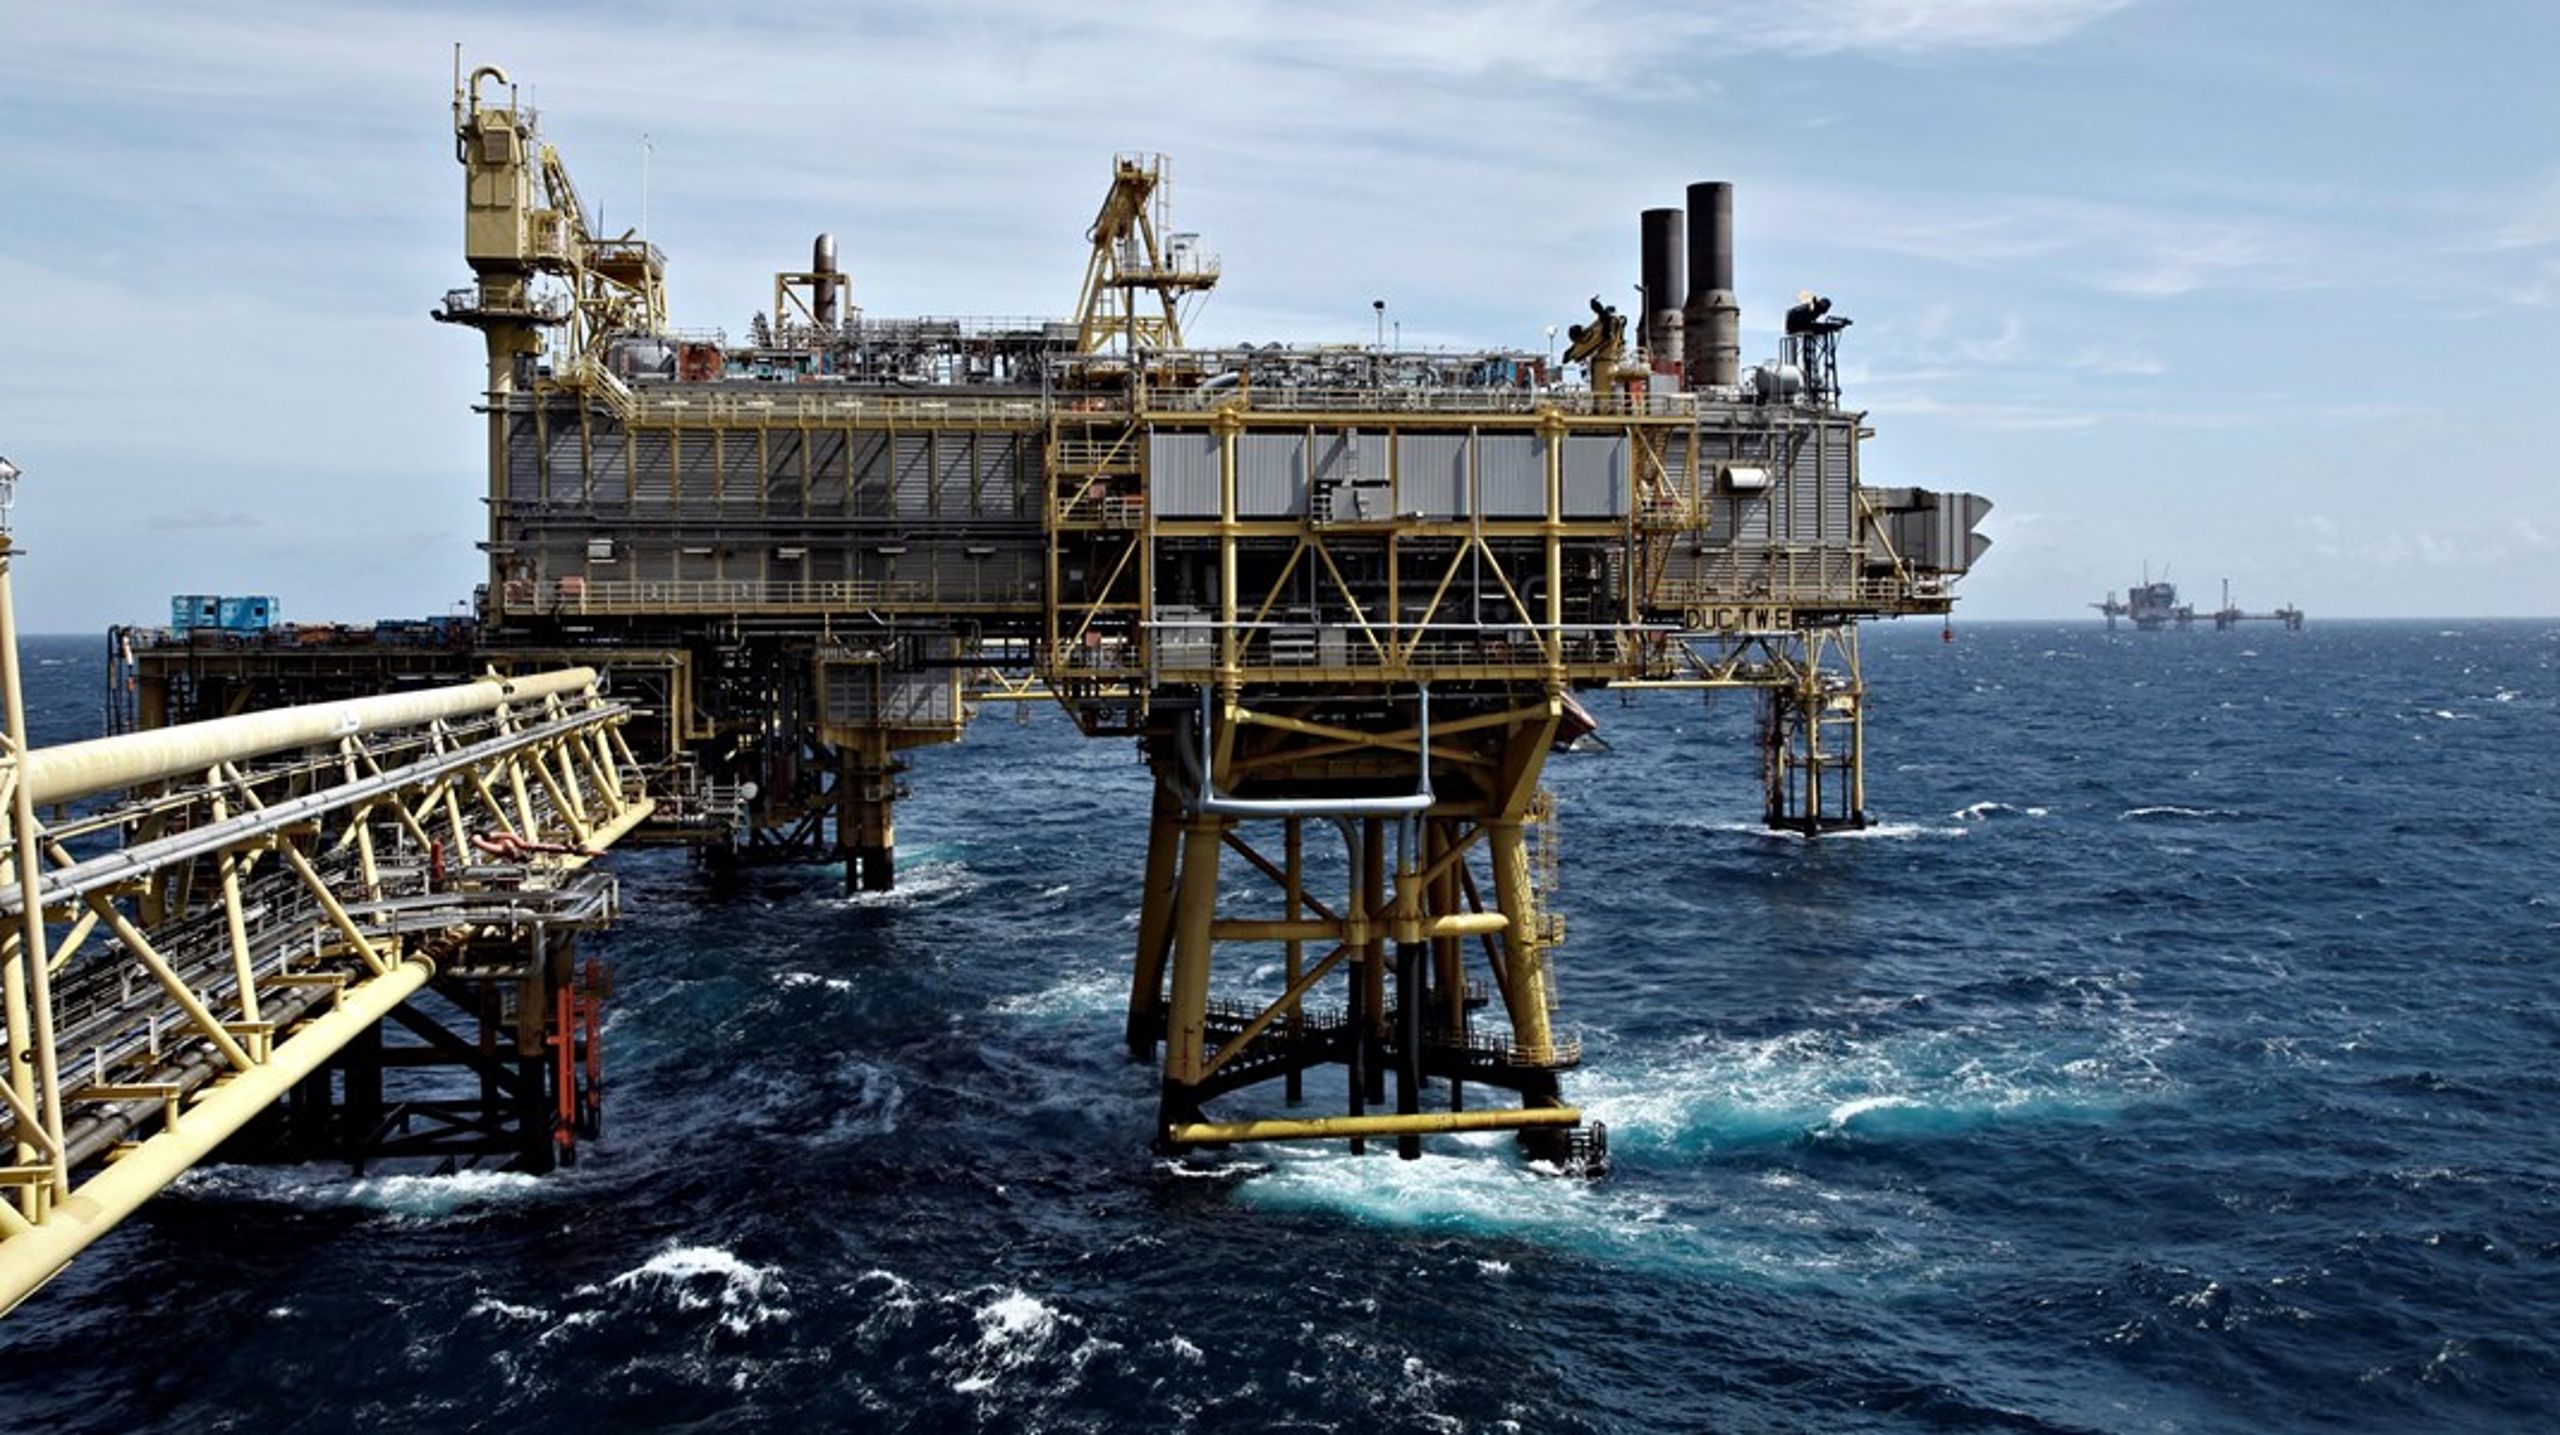 Der faldt 18. januar en afgørelse i sagen om tre norske oliefelter i byretten i Olso. Fotoet er et arkivfoto af Tyra Vest feltet i Nordsøen.